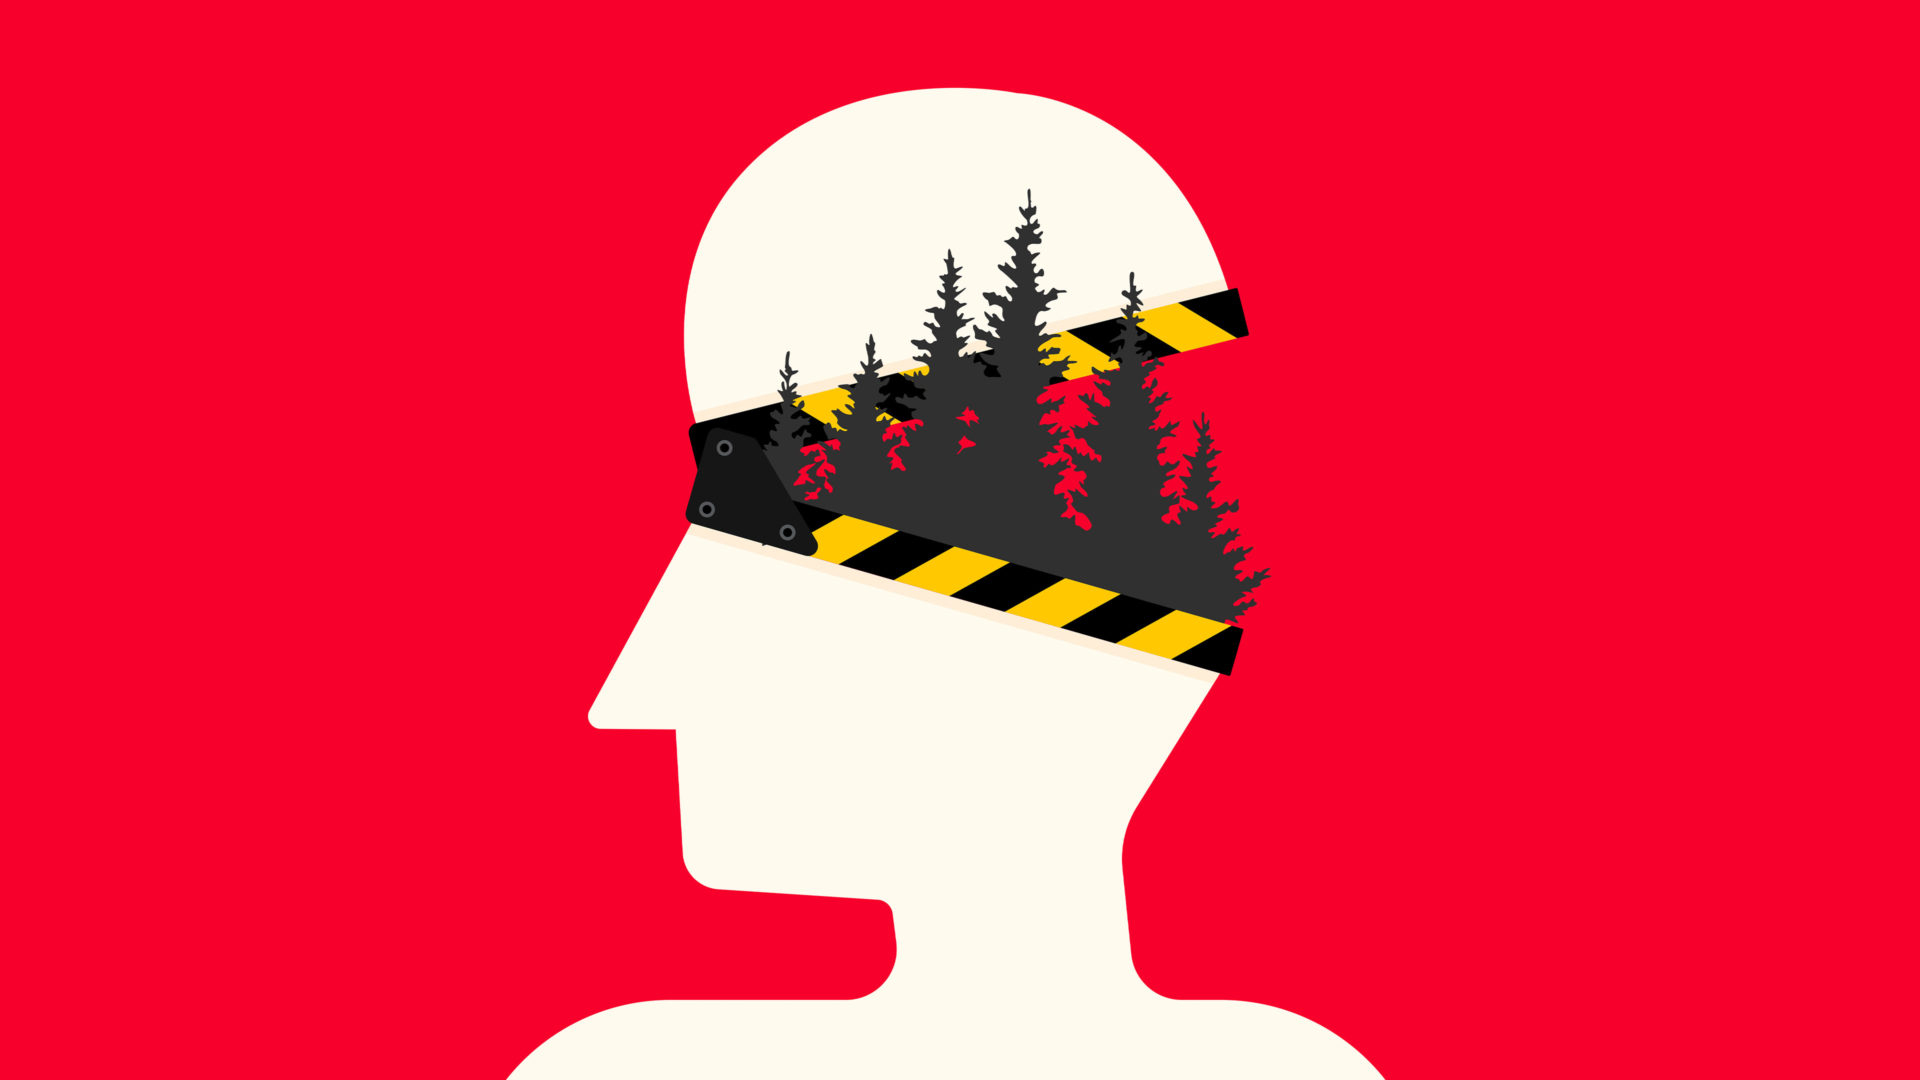 En grafisk filmaffisch som visar en vit siluett av en människofigur mot röd bakgrund. Figurens huvud öppnas som en klaffbräda. Ränderna på klaffbrädan är målade i uppmärksamhetsfärger. Inne i huvudet växer skog.